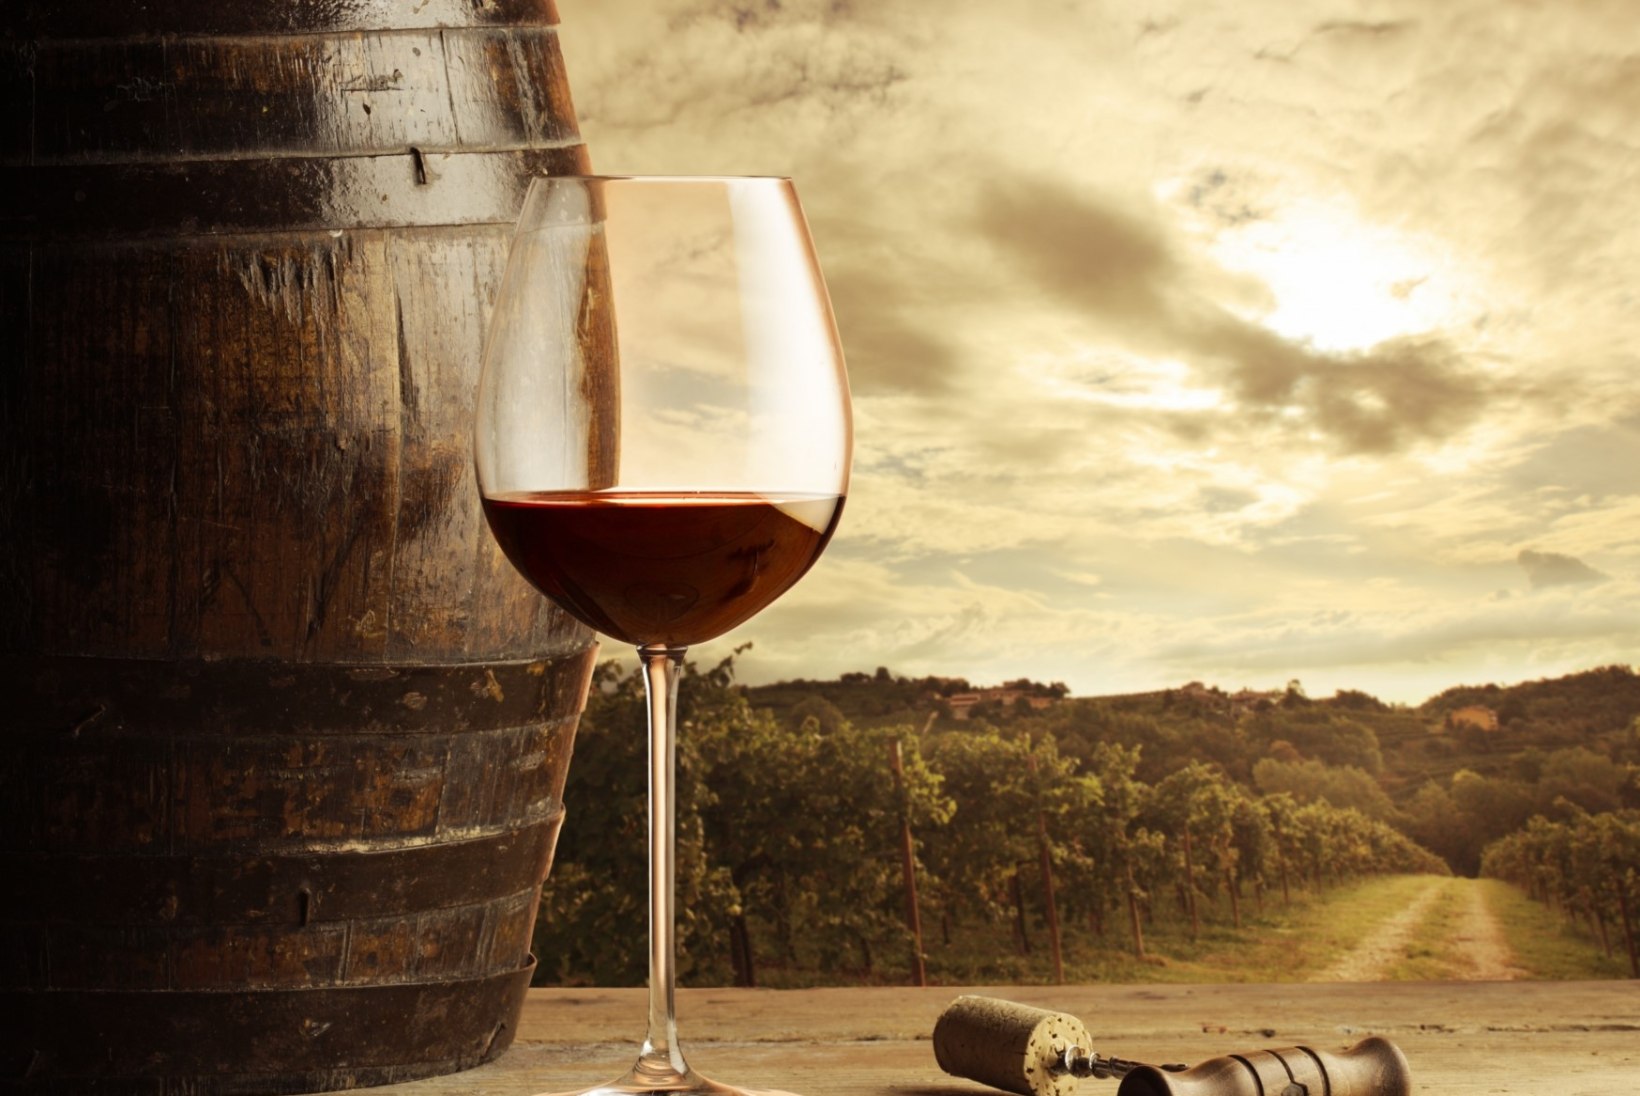 Miks tekib peavalu pärast veini joomist?